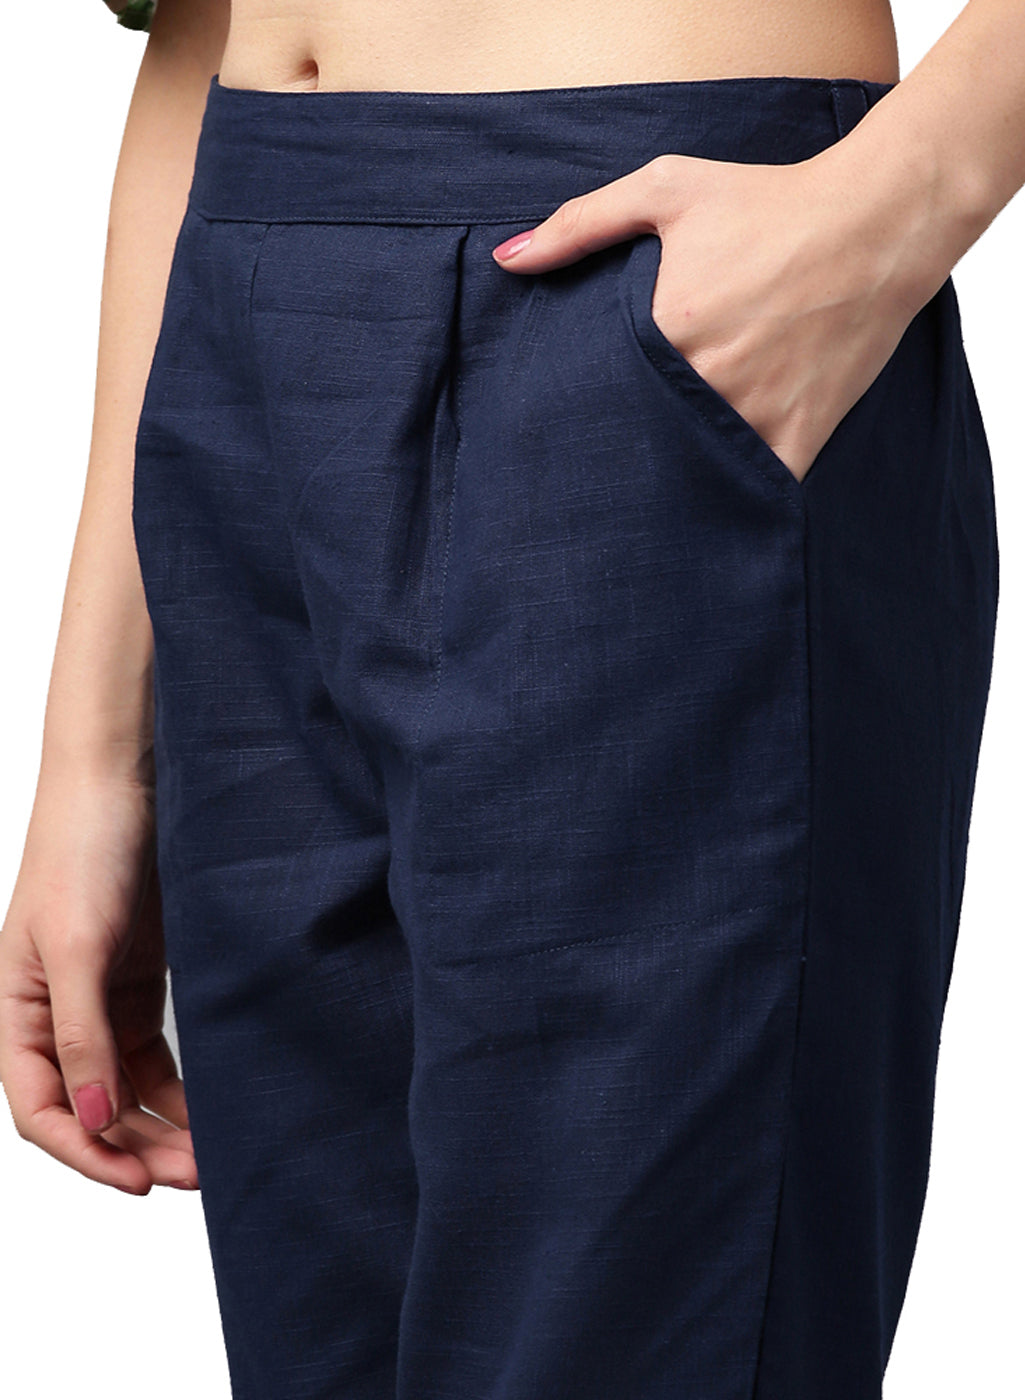 Shop Cotton Pants for Women